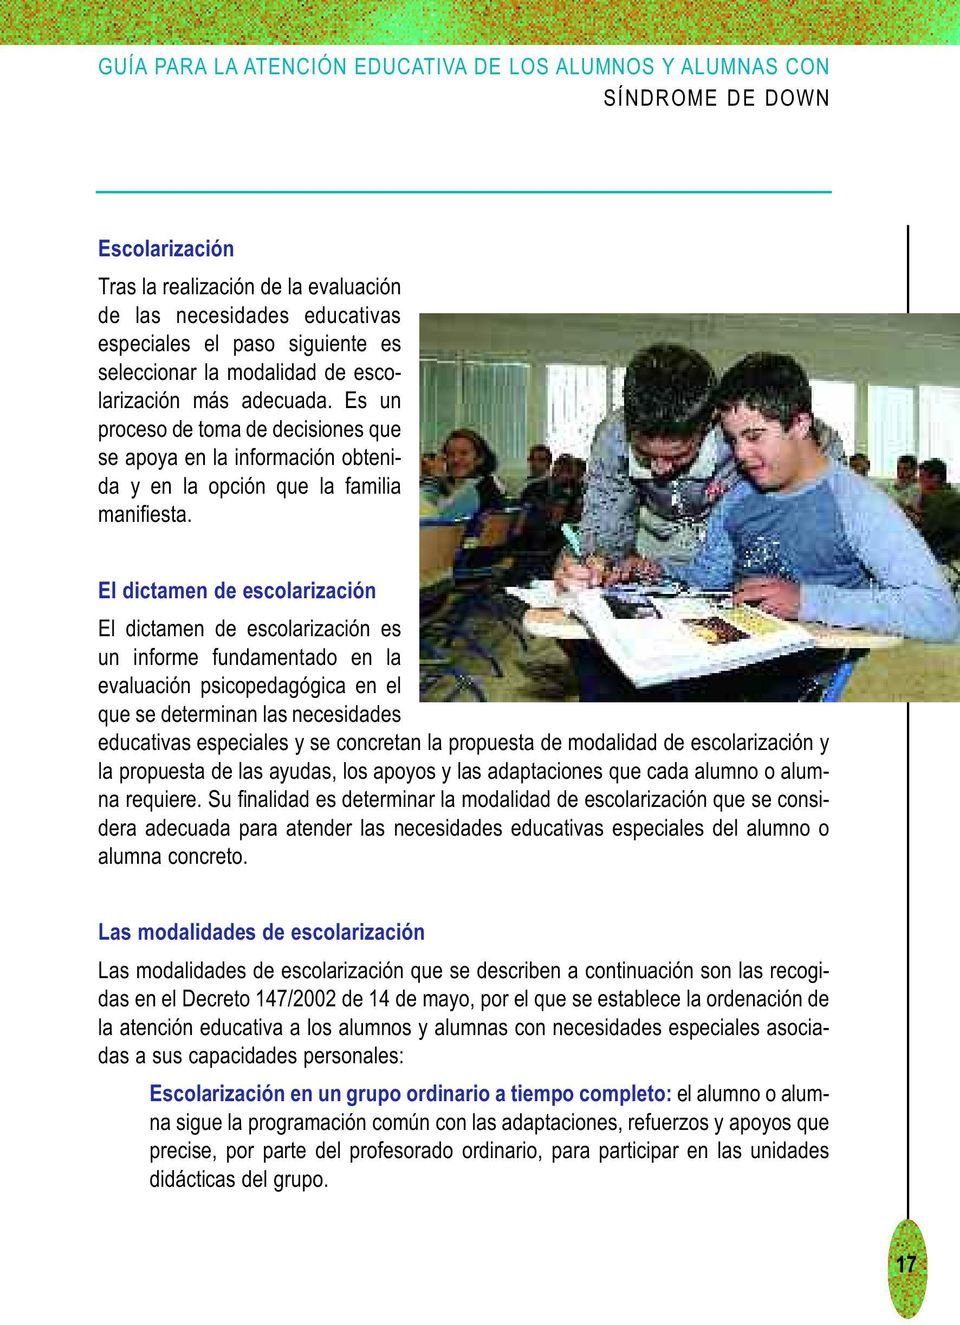 El dictamen de escolarización El dictamen de escolarización es un informe fundamentado en la evaluación psicopedagógica en el que se determinan las necesidades educativas especiales y se concretan la